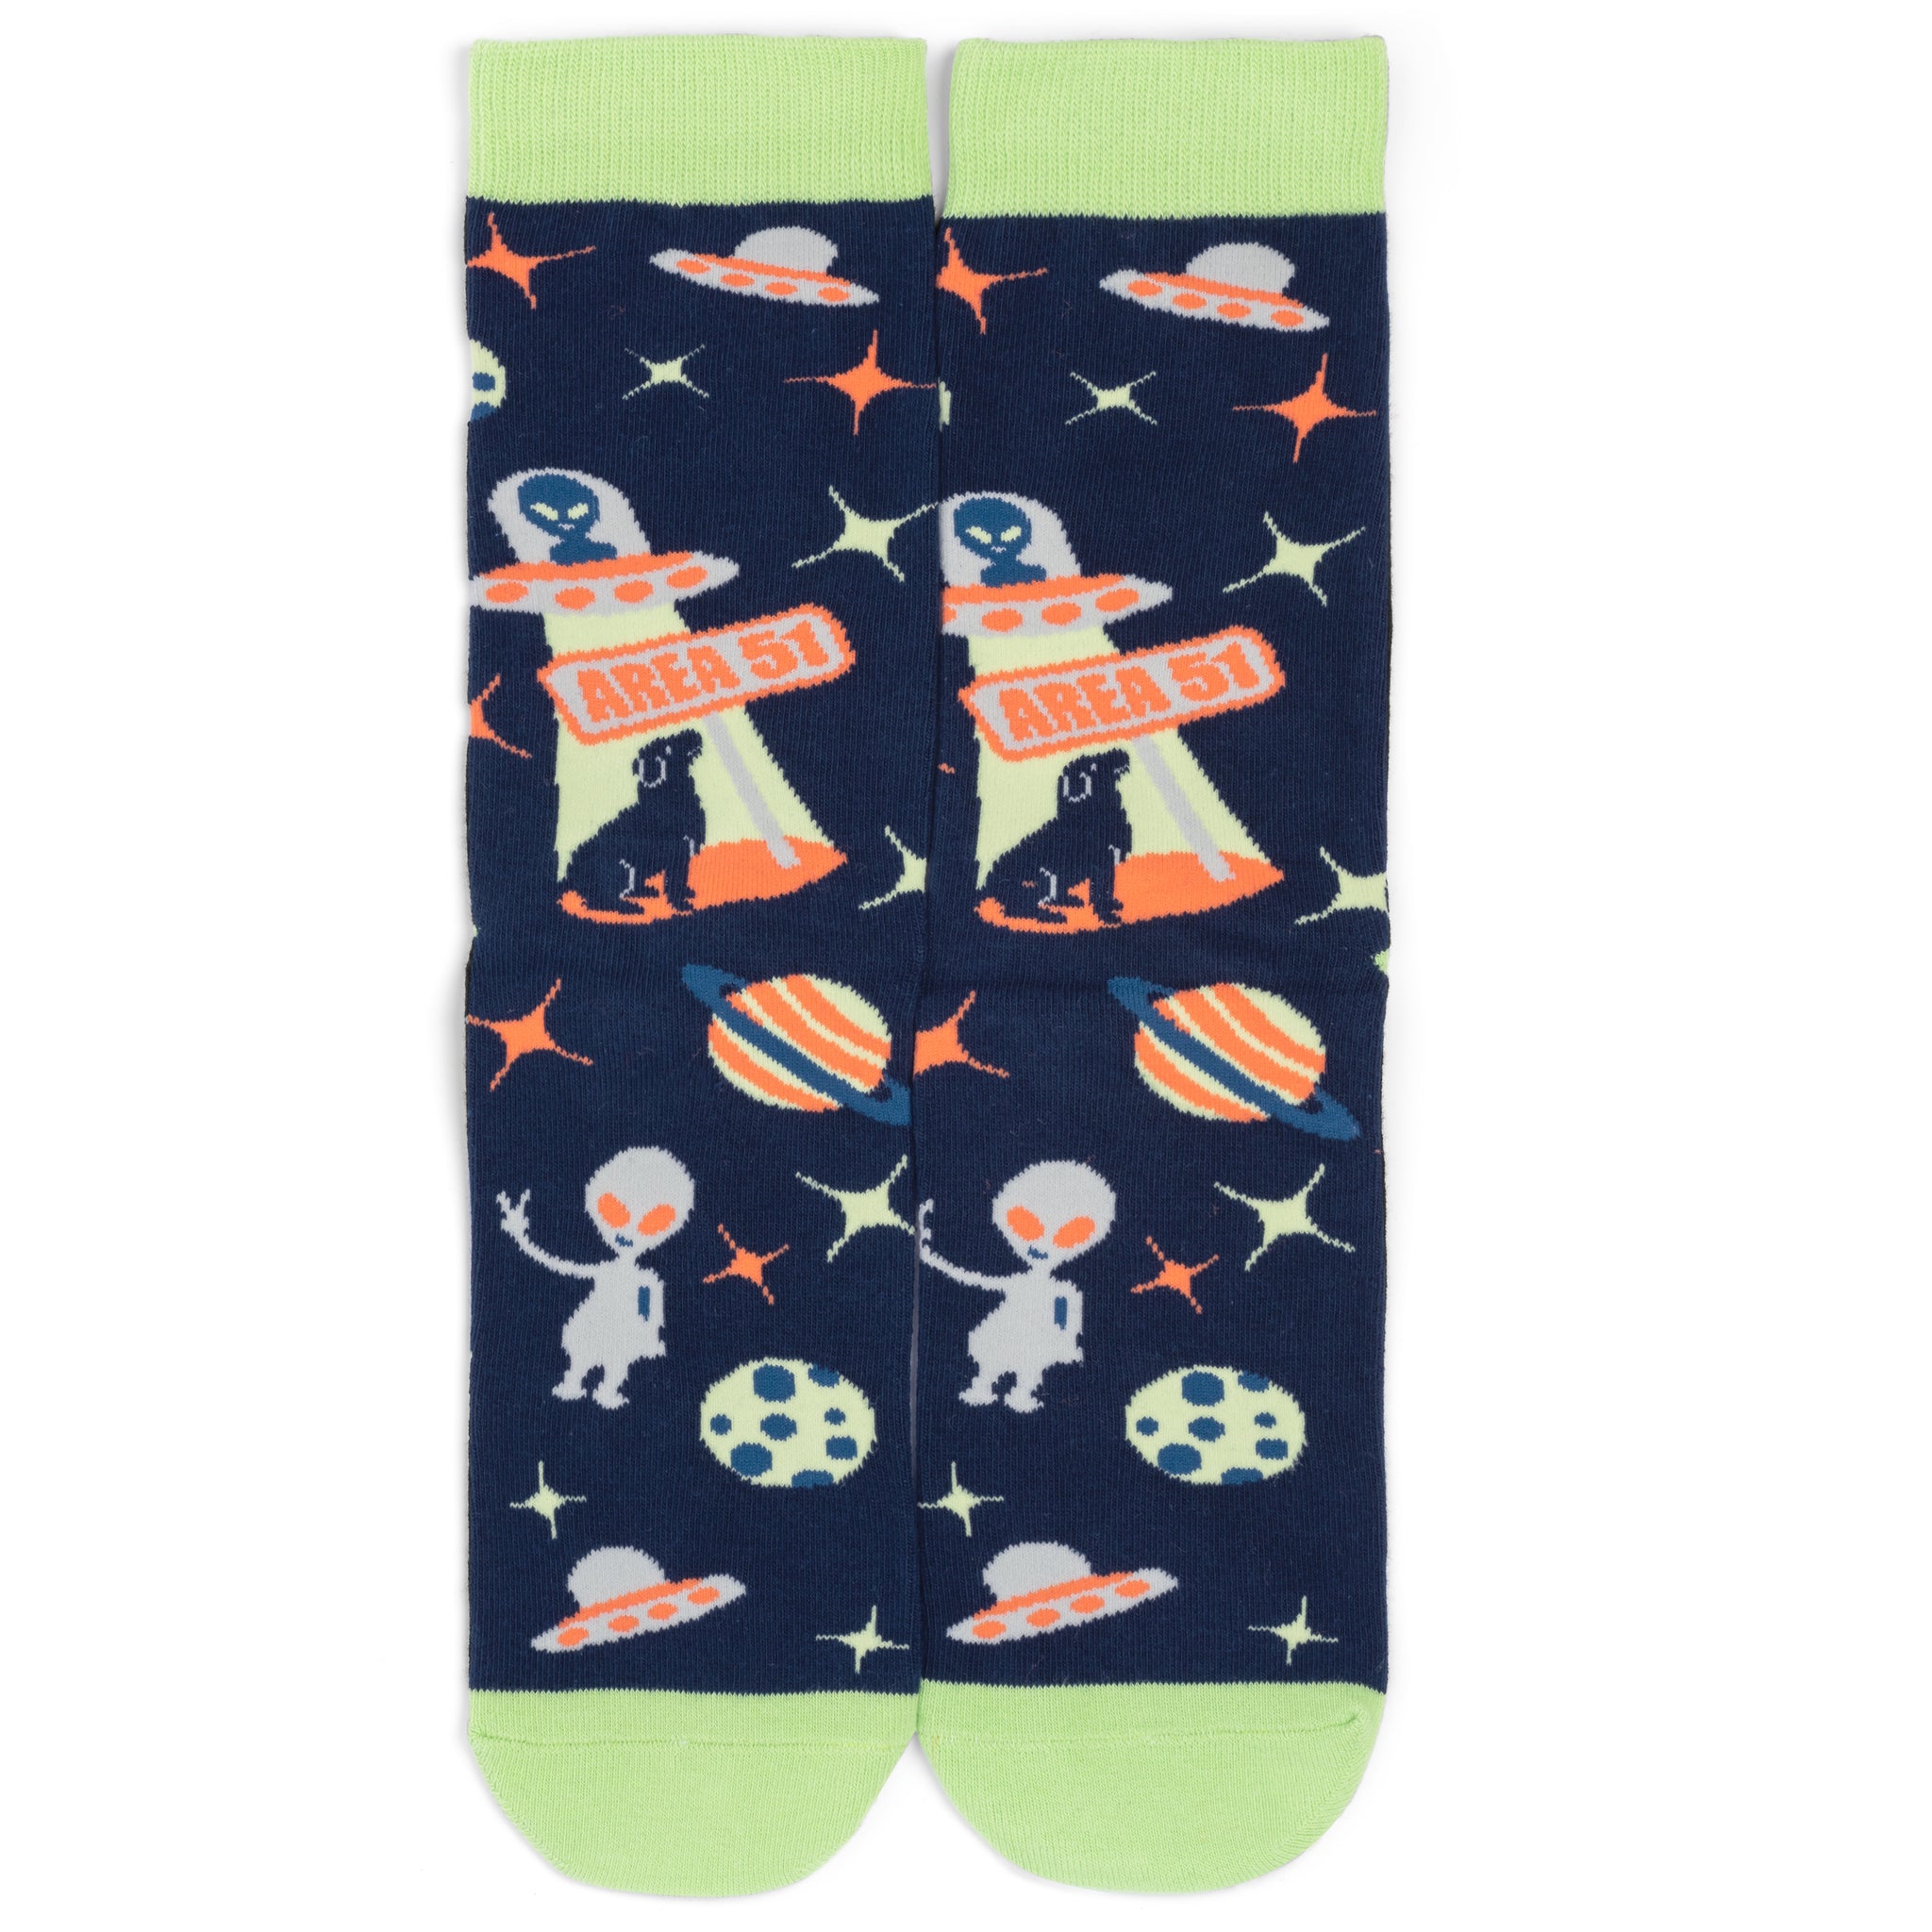 Lavley | Alien Socks | Crew Length Novelty Socks For Men & Women